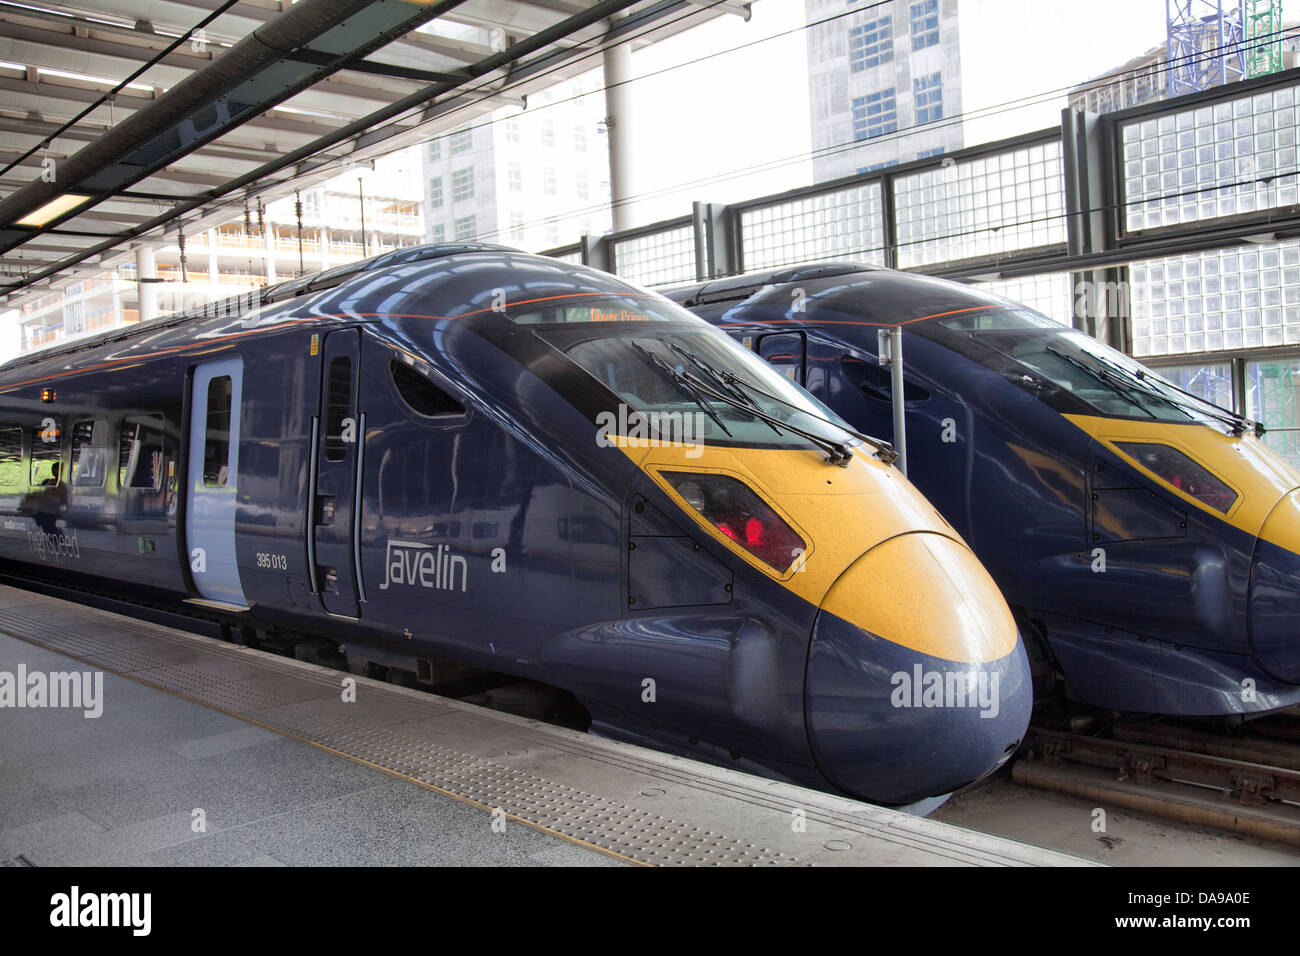 Giavellotto alta velocità Sud Est treni sulla stazione ferroviaria internazionale di St Pancras piattaforma - London REGNO UNITO Foto Stock